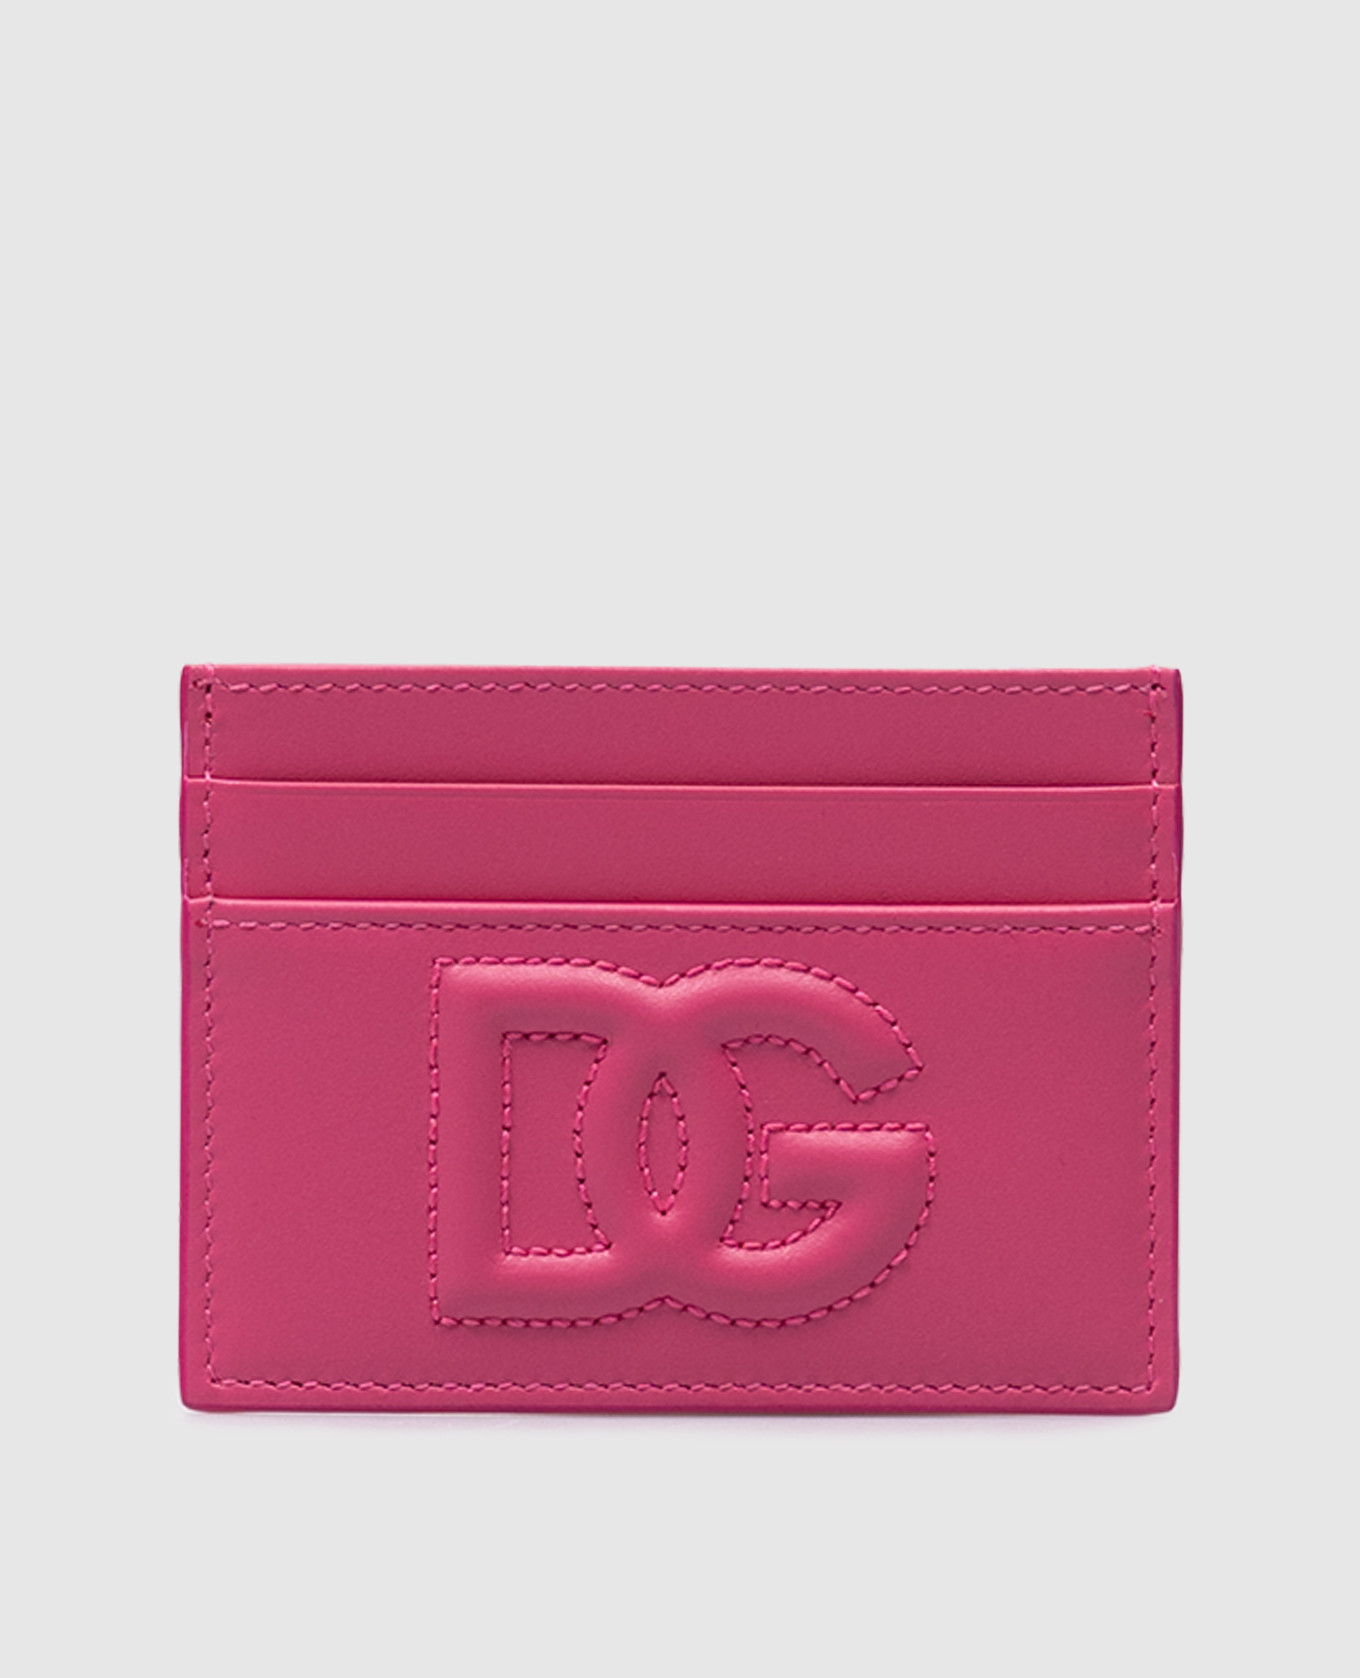 DG LOGO pink leather cardholder